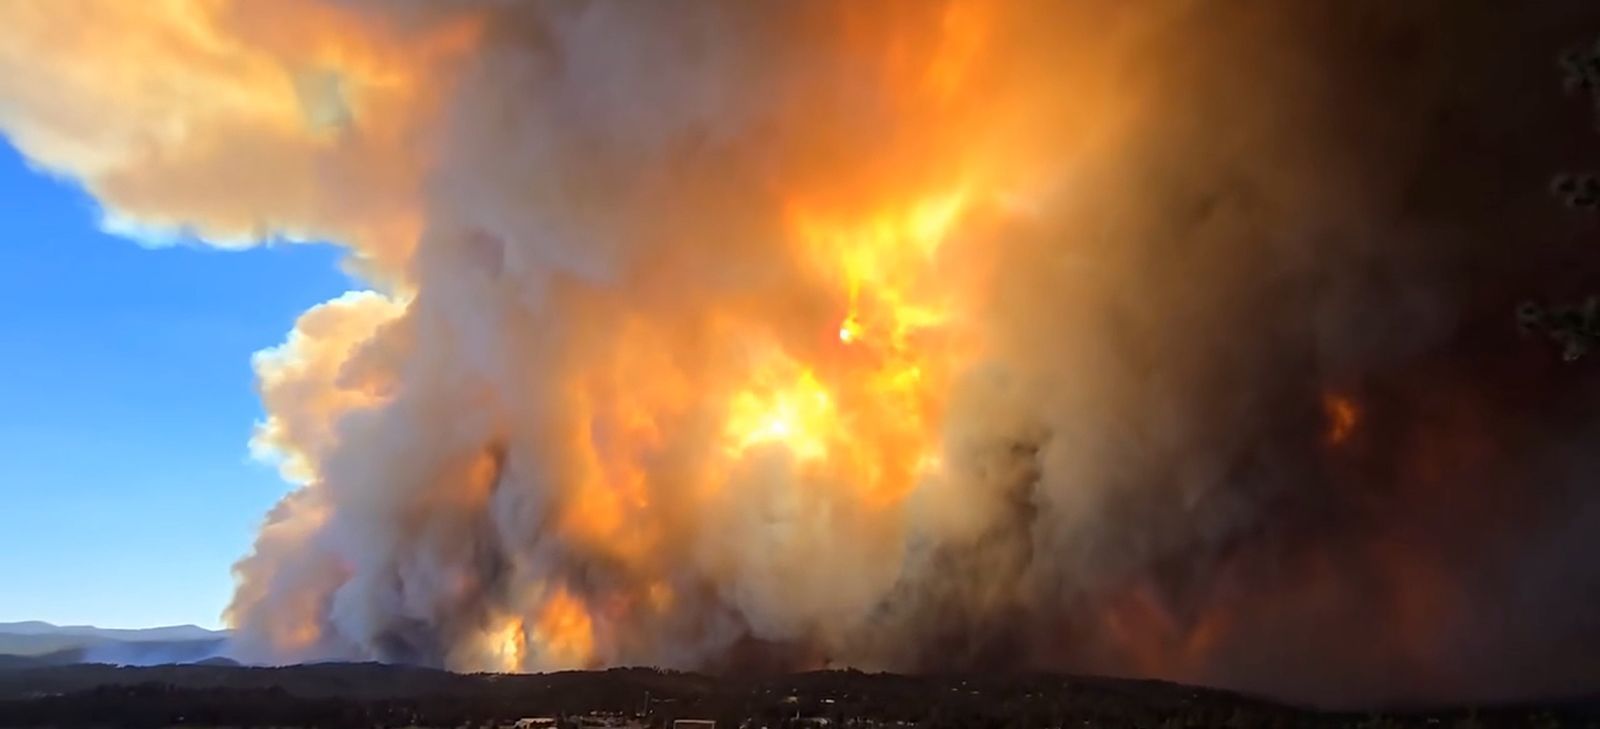 Estado dos EUA declara situação de emergência por incêndios florestais